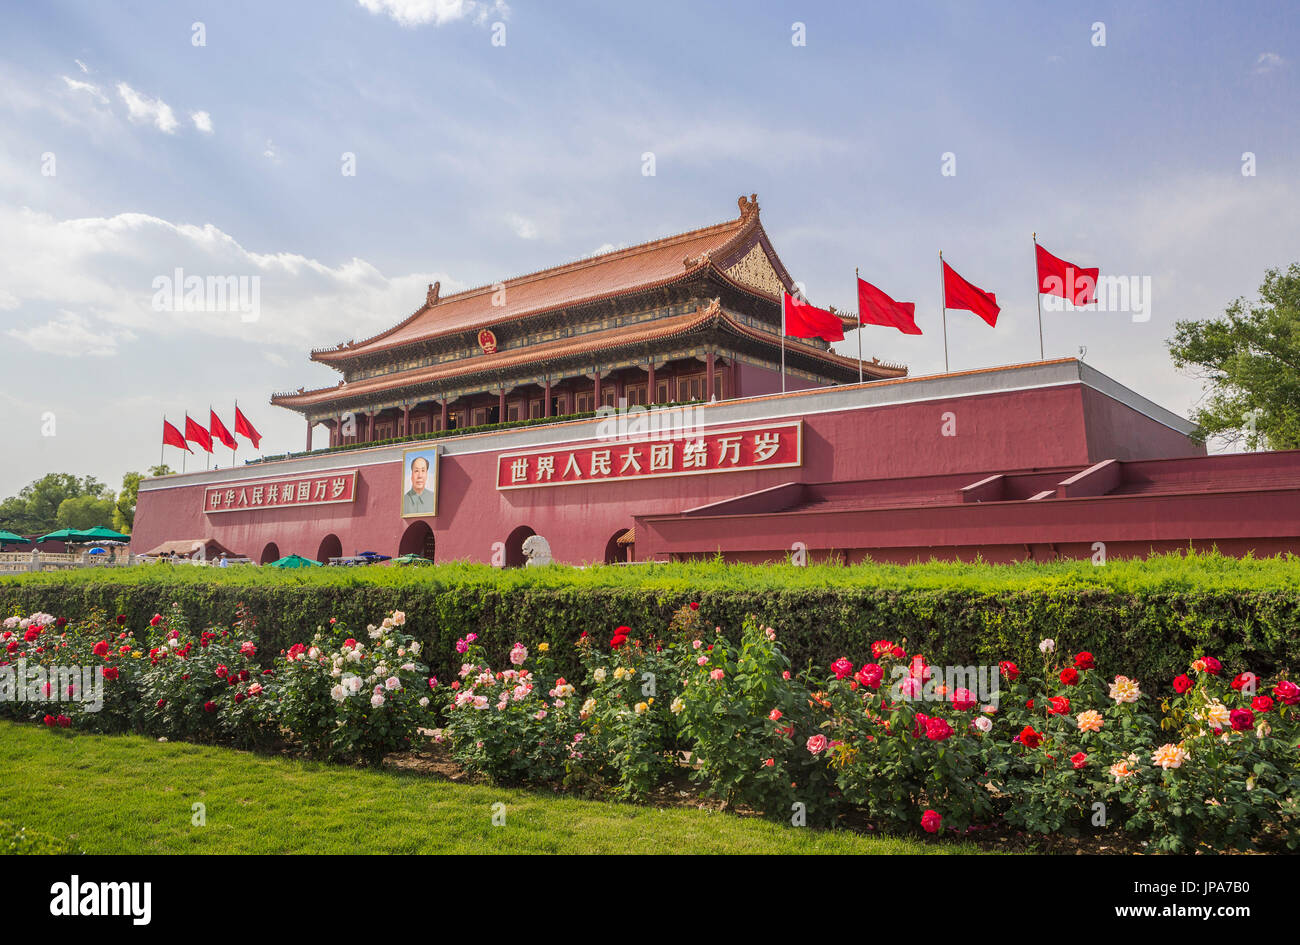 La Chine, Pékin, la Place Tian'anmen, porte de la Paix Céleste Banque D'Images